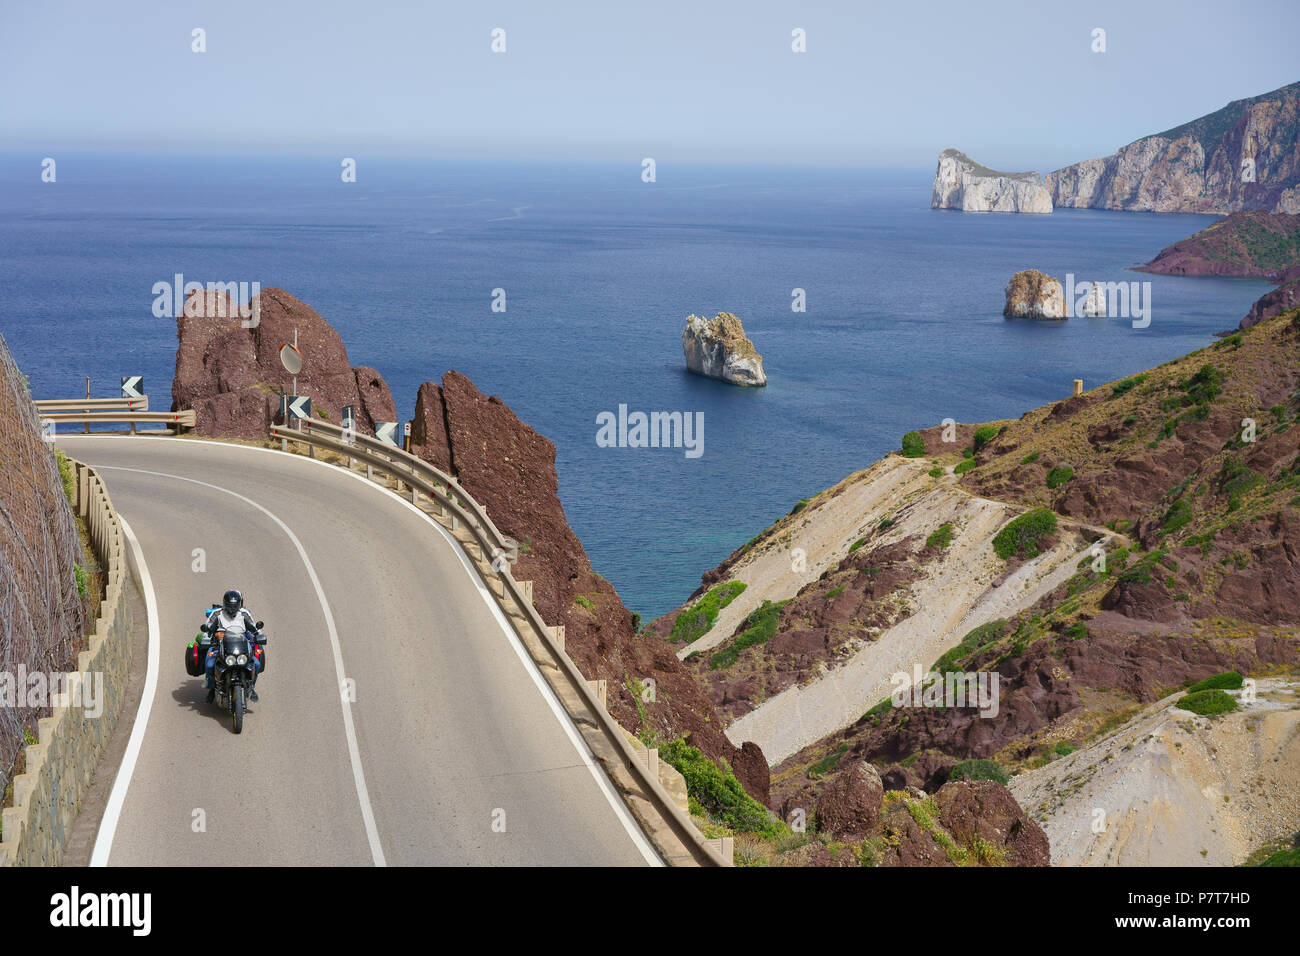 Fahrer auf einem Dual-Sport-Motorrad auf einer corniche mit Blick auf das Mittelmeer. Masua, Provinz Südsardinien, Sardinien, Italien. Stockfoto